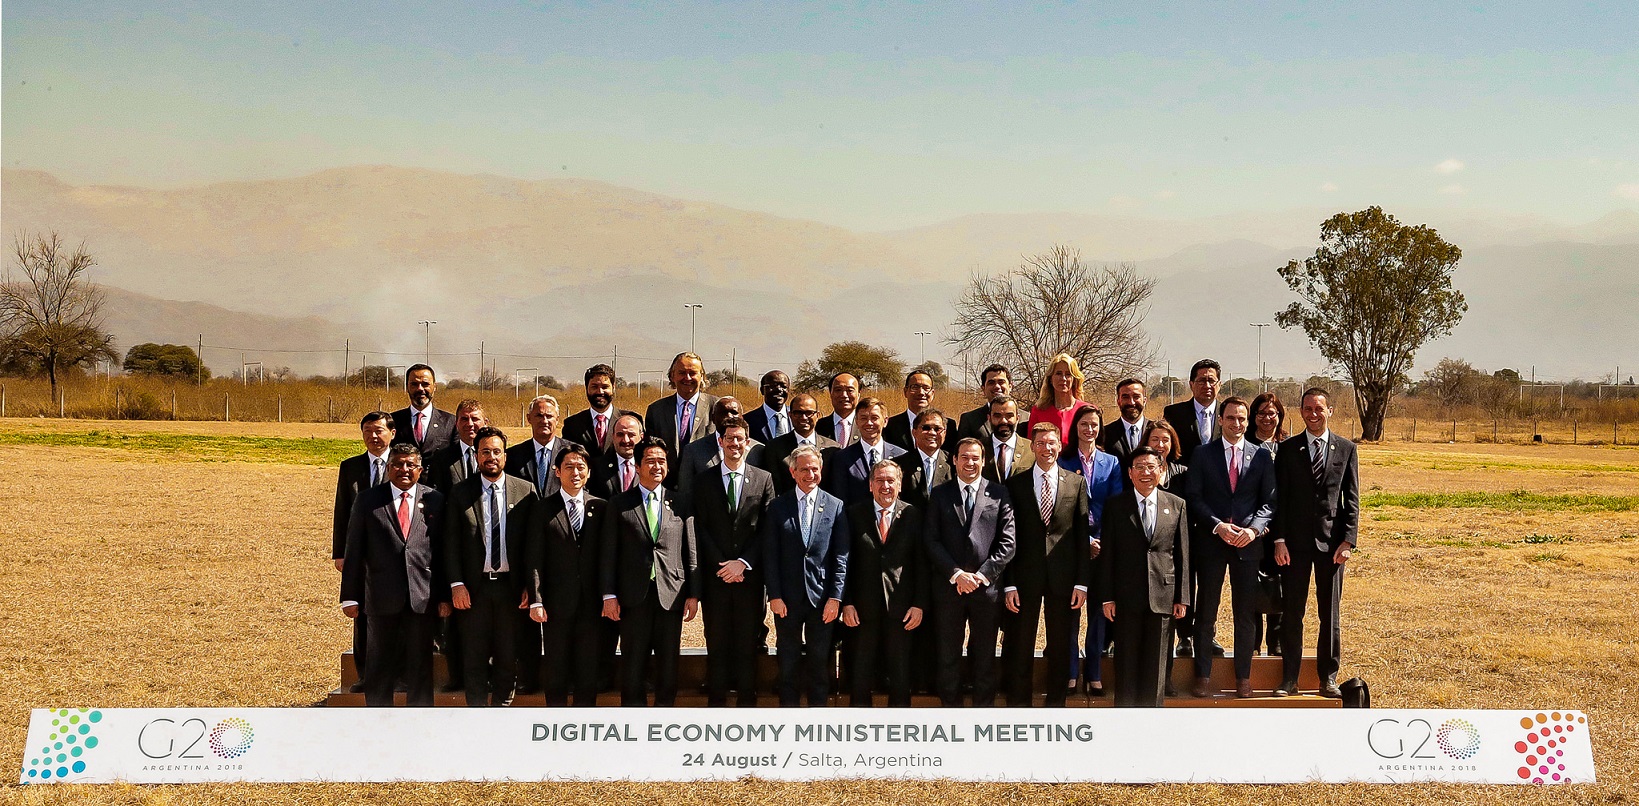 La declaración final de la Reunión Ministerial de Salta incluye propuestas para reducir la brecha digital de género, transformar el gobierno, medir la nueva economía y acelerar el desarrollo de infraestructura digital, entre otros temas estratégicos.